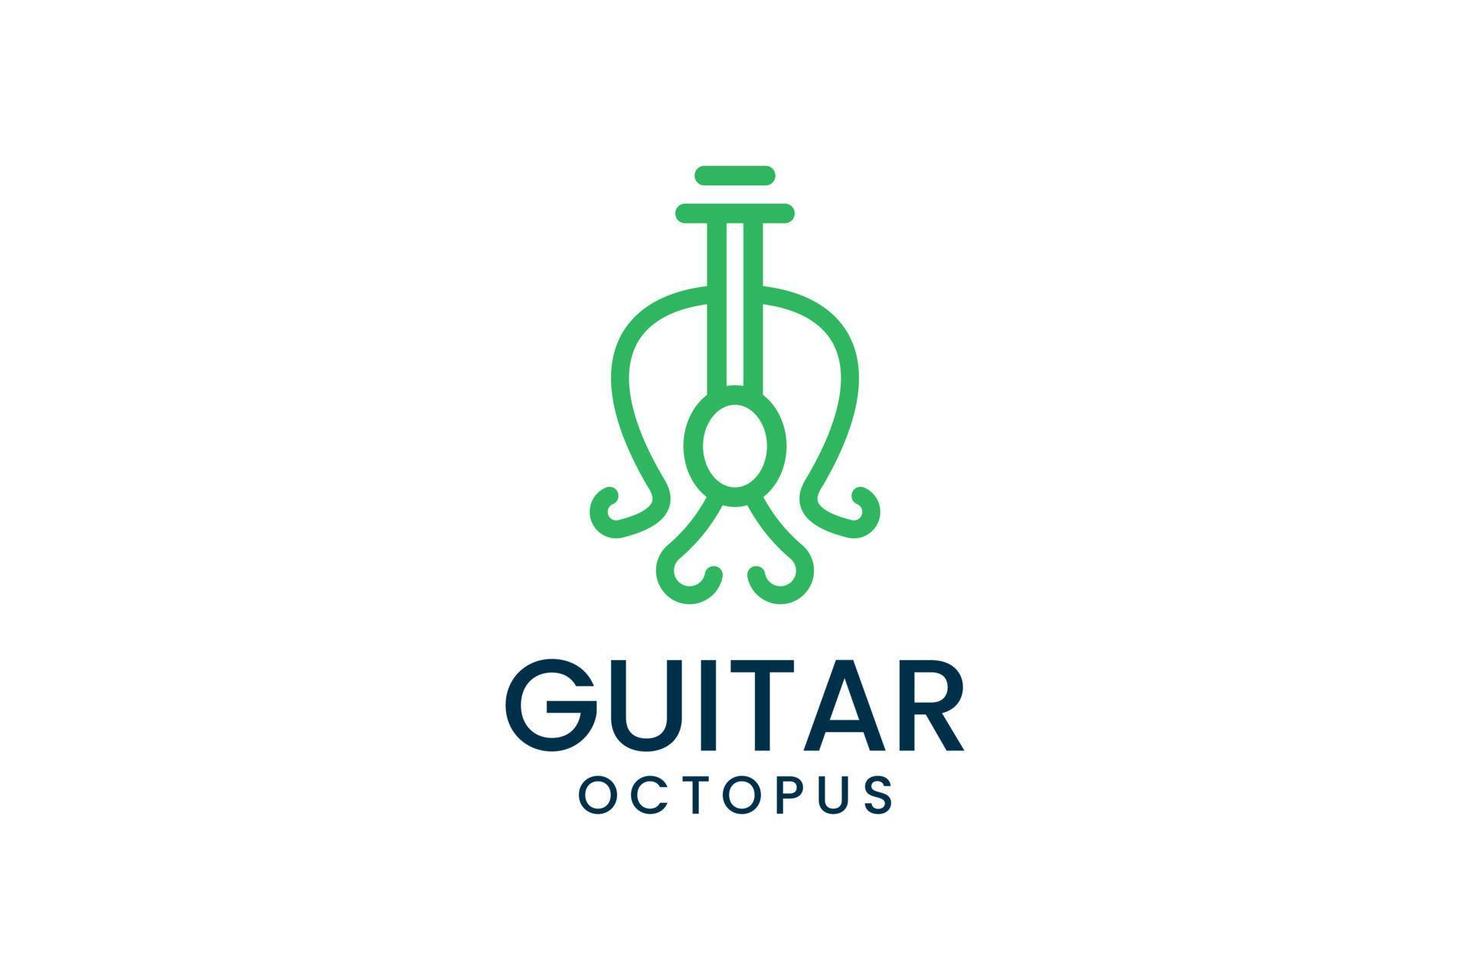 Creative octopus guitar logo inspiration vector